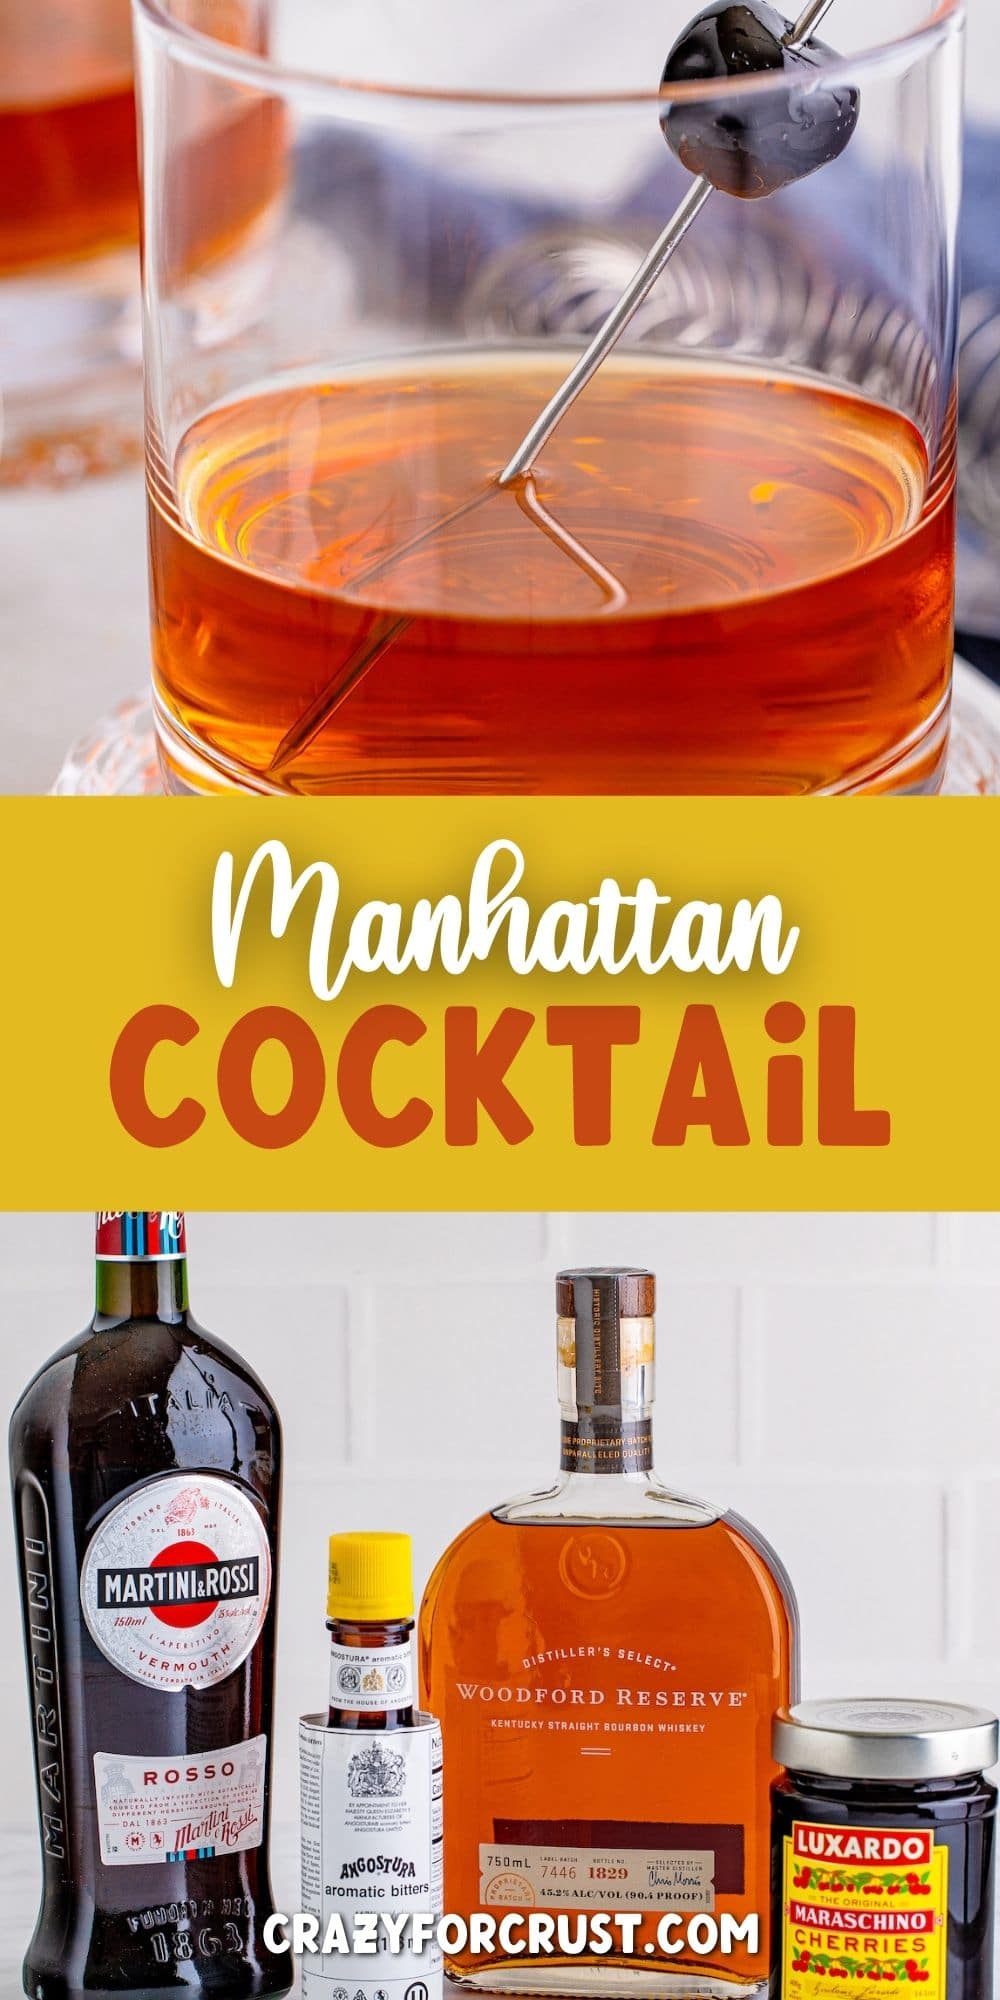 https://www.crazyforcrust.com/wp-content/uploads/2022/04/Manhattan-cocktail_collage.jpg